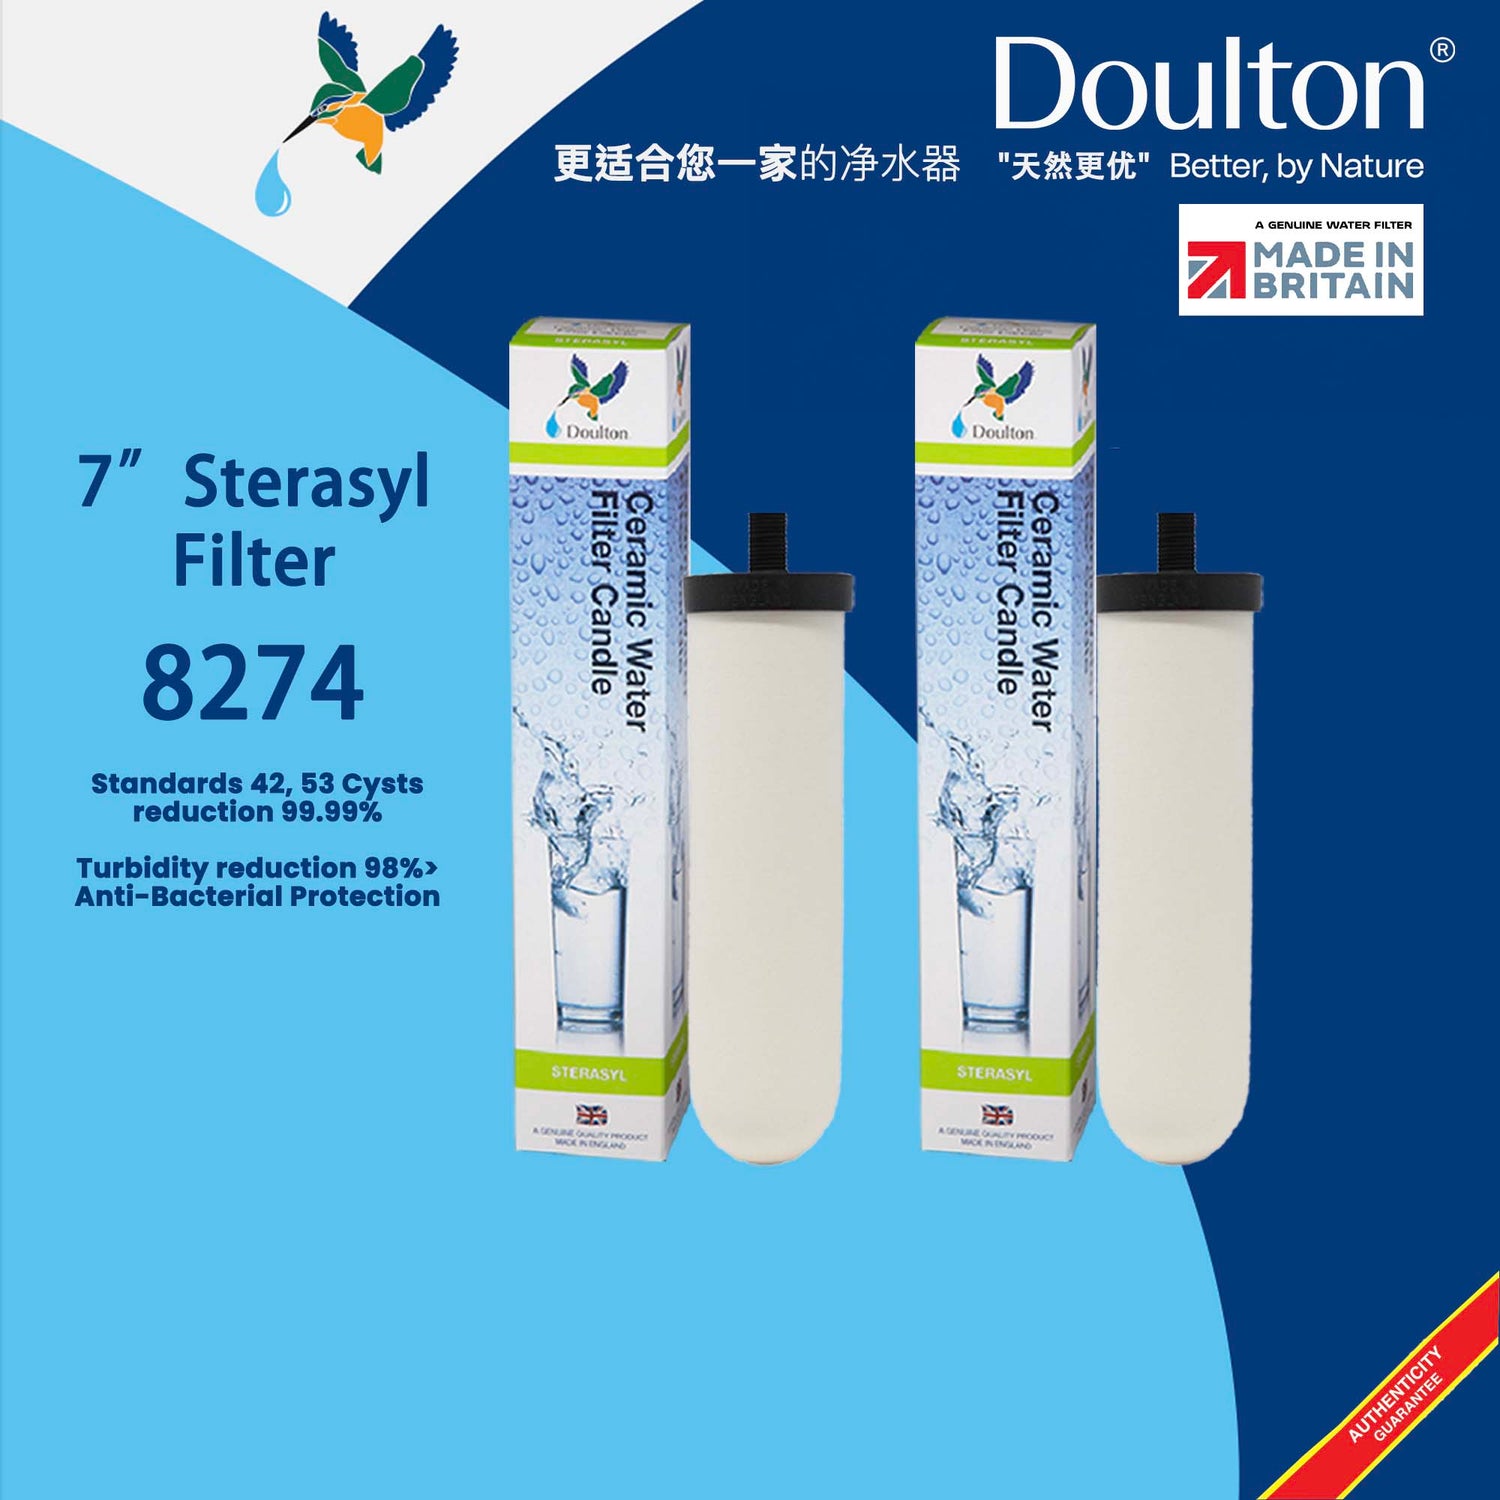 Doulton Sterasyl® 8274 *Pre-Cut